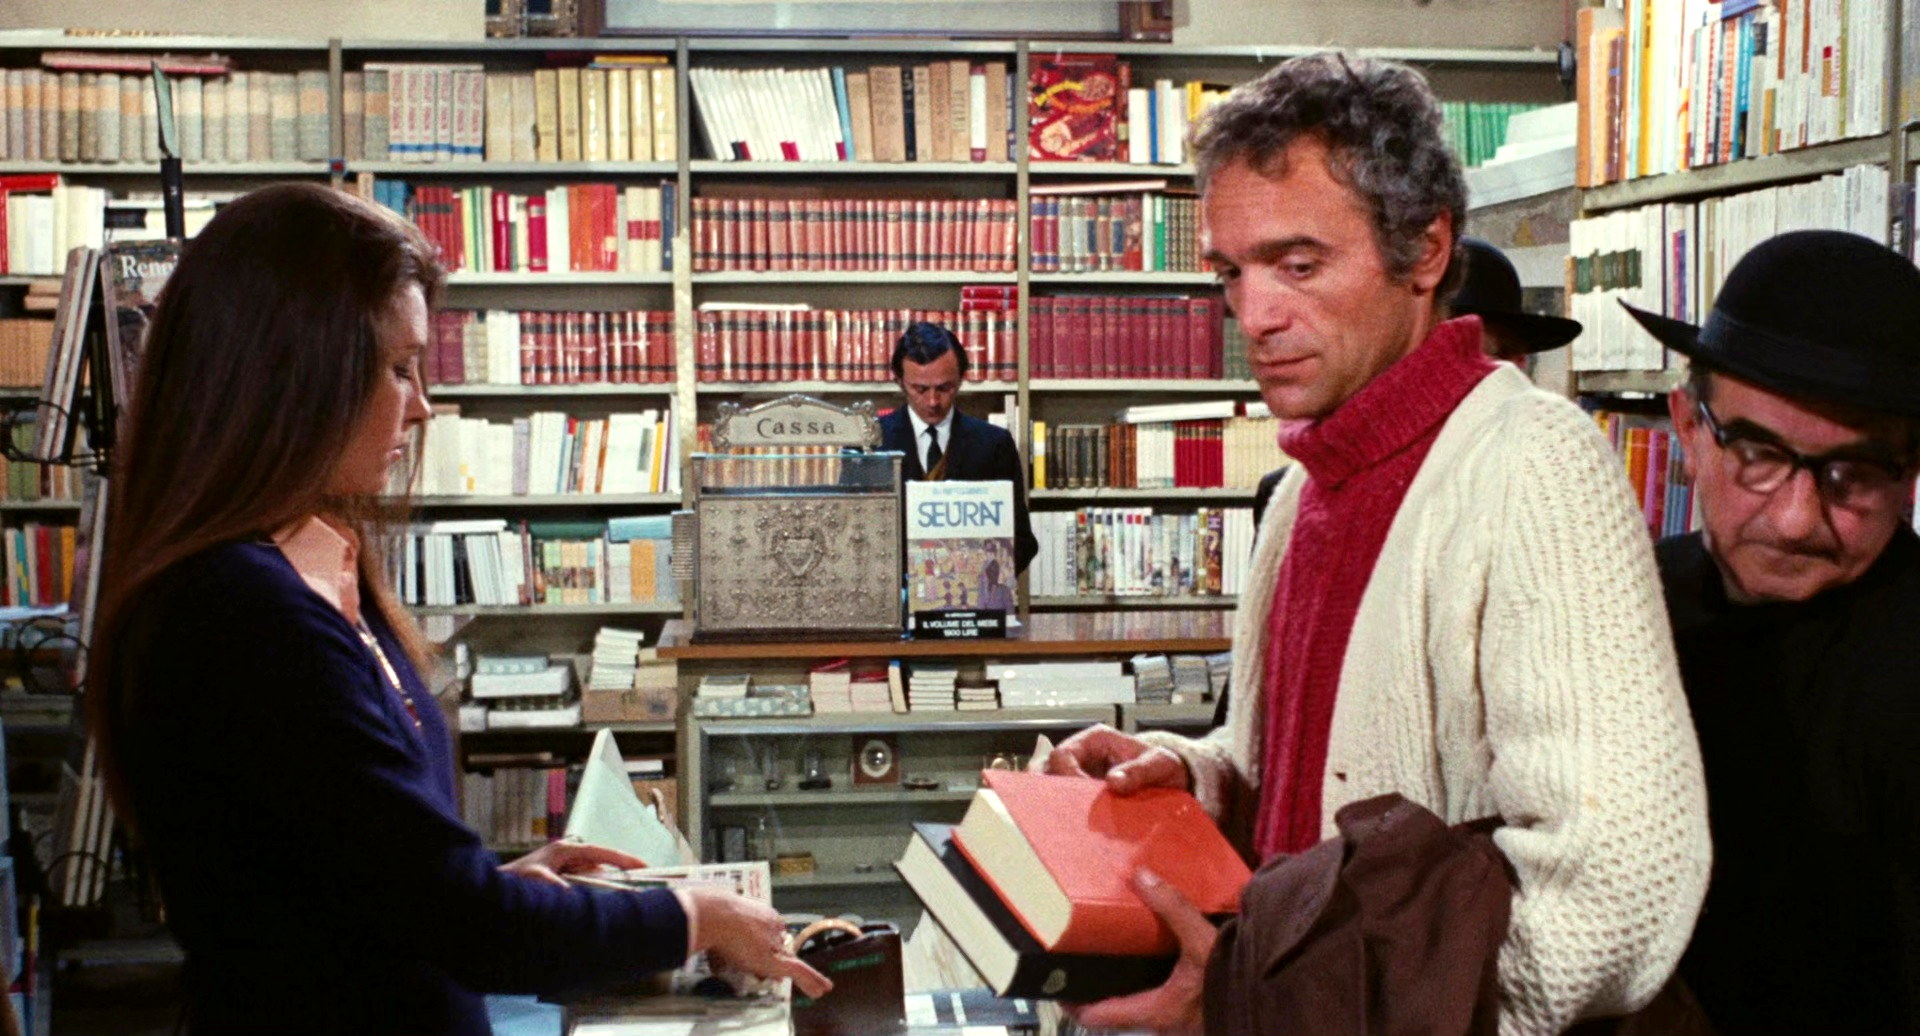 Il tuo vizio (1972) Old priest in library b.jpg